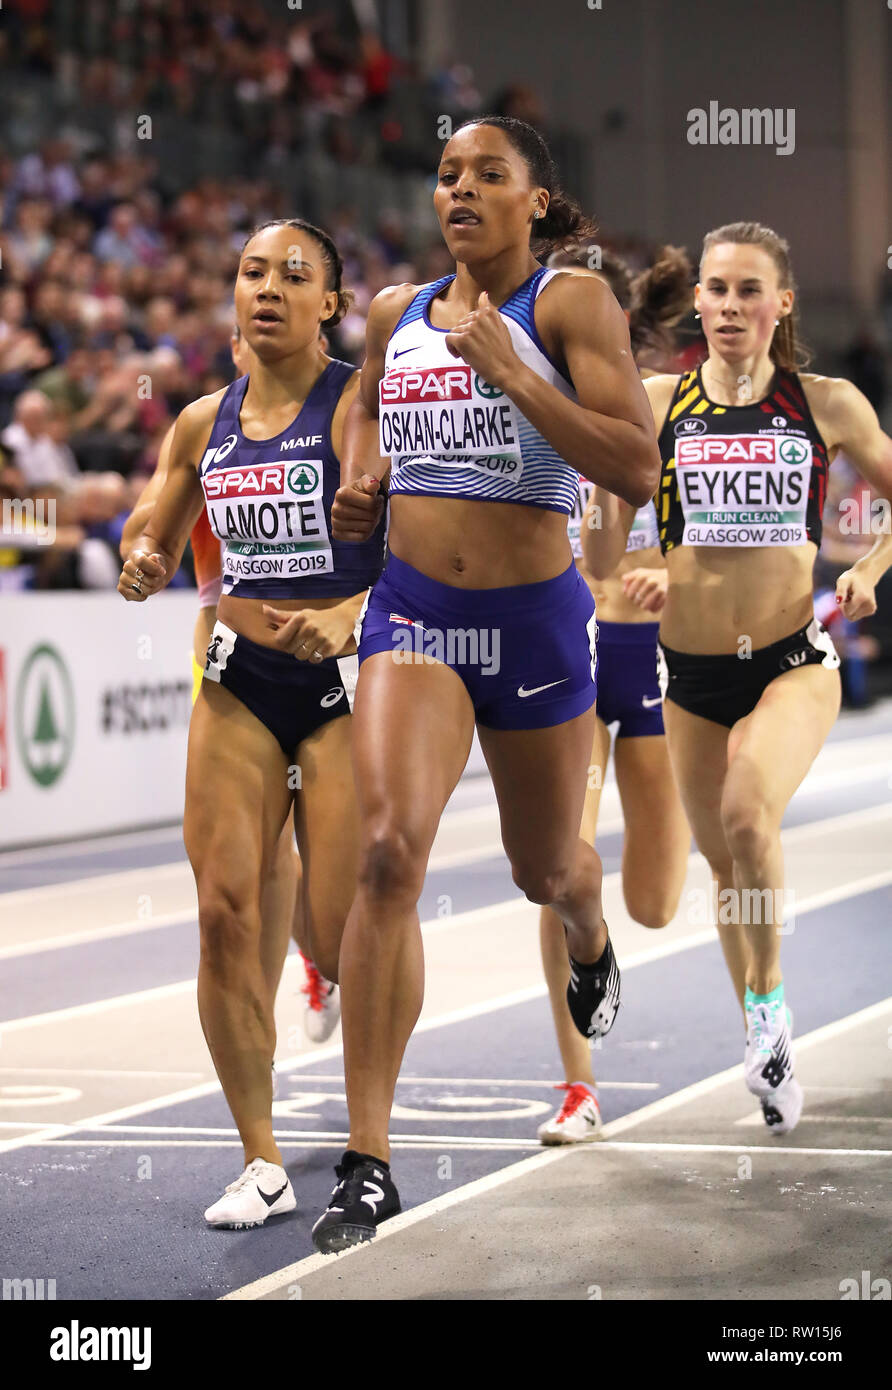 Gran Bretagna Shelayna Oskan-Clarke conduce la gara durante la donna 800m Finale durante il giorno tre Europei Indoor di Atletica a Emirates Arena, Glasgow. Foto Stock